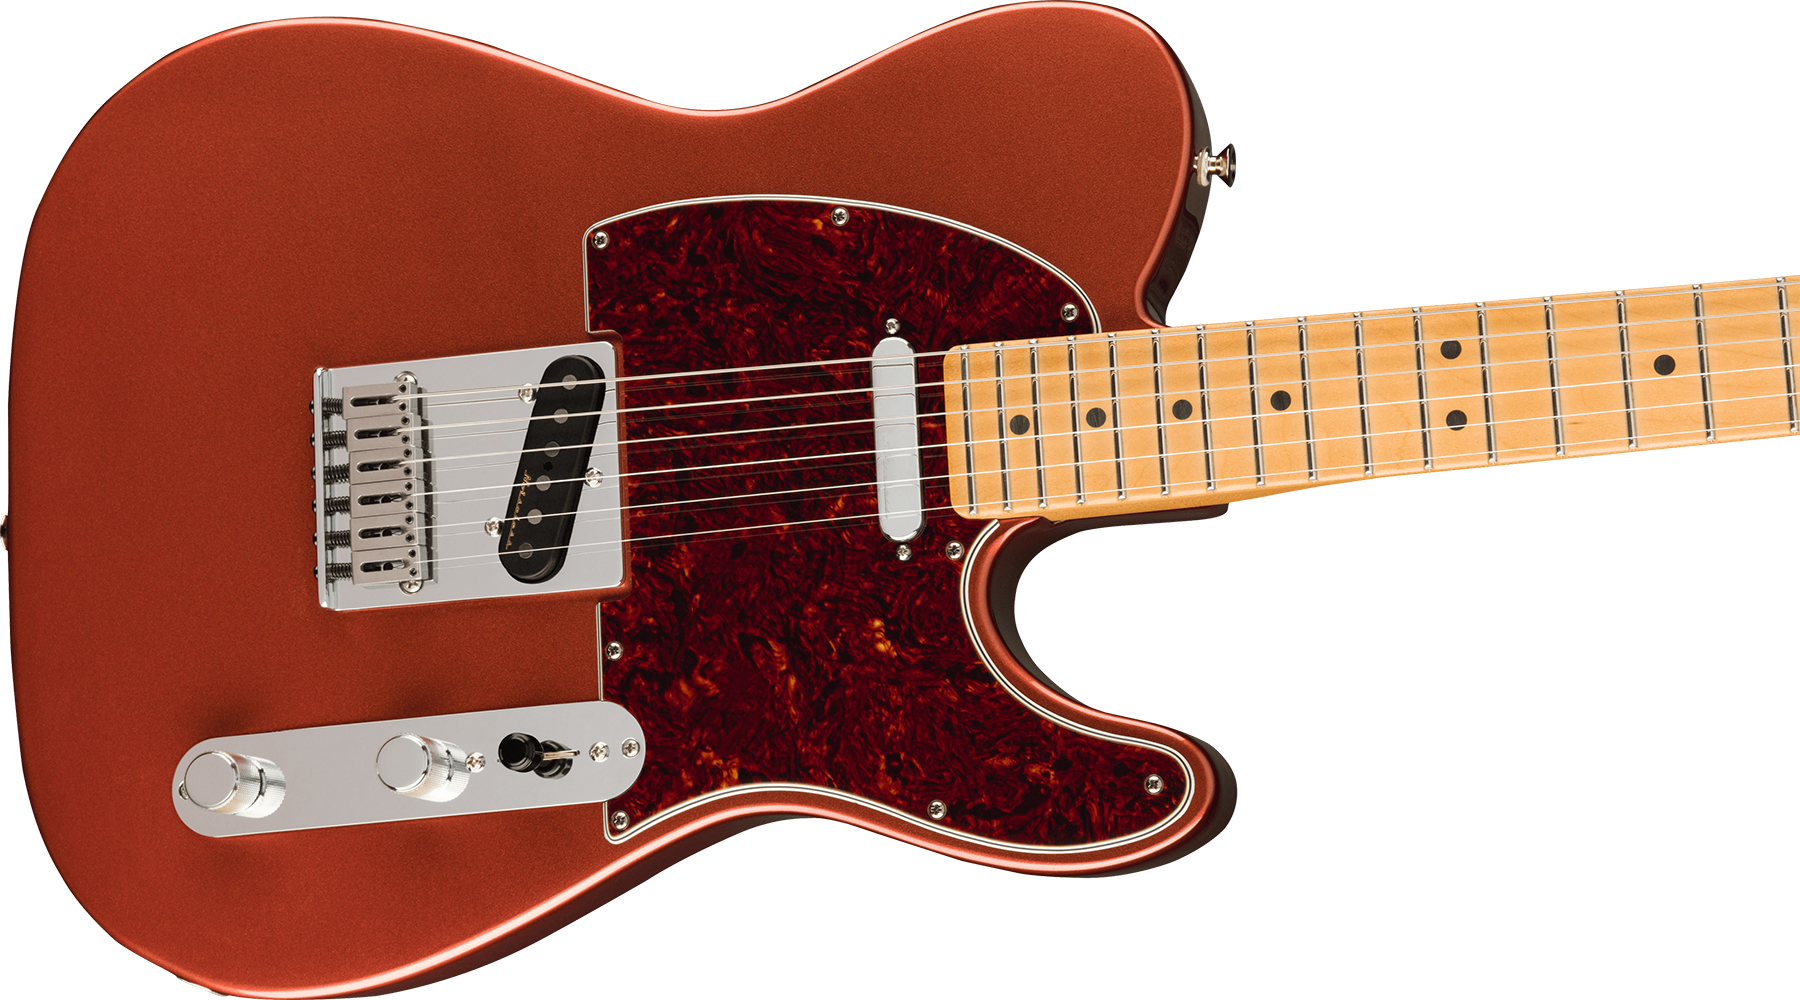 Fender Tele Player Plus Mex 2s Ht Mn - Aged Candy Apple Red - Televorm elektrische gitaar - Variation 2